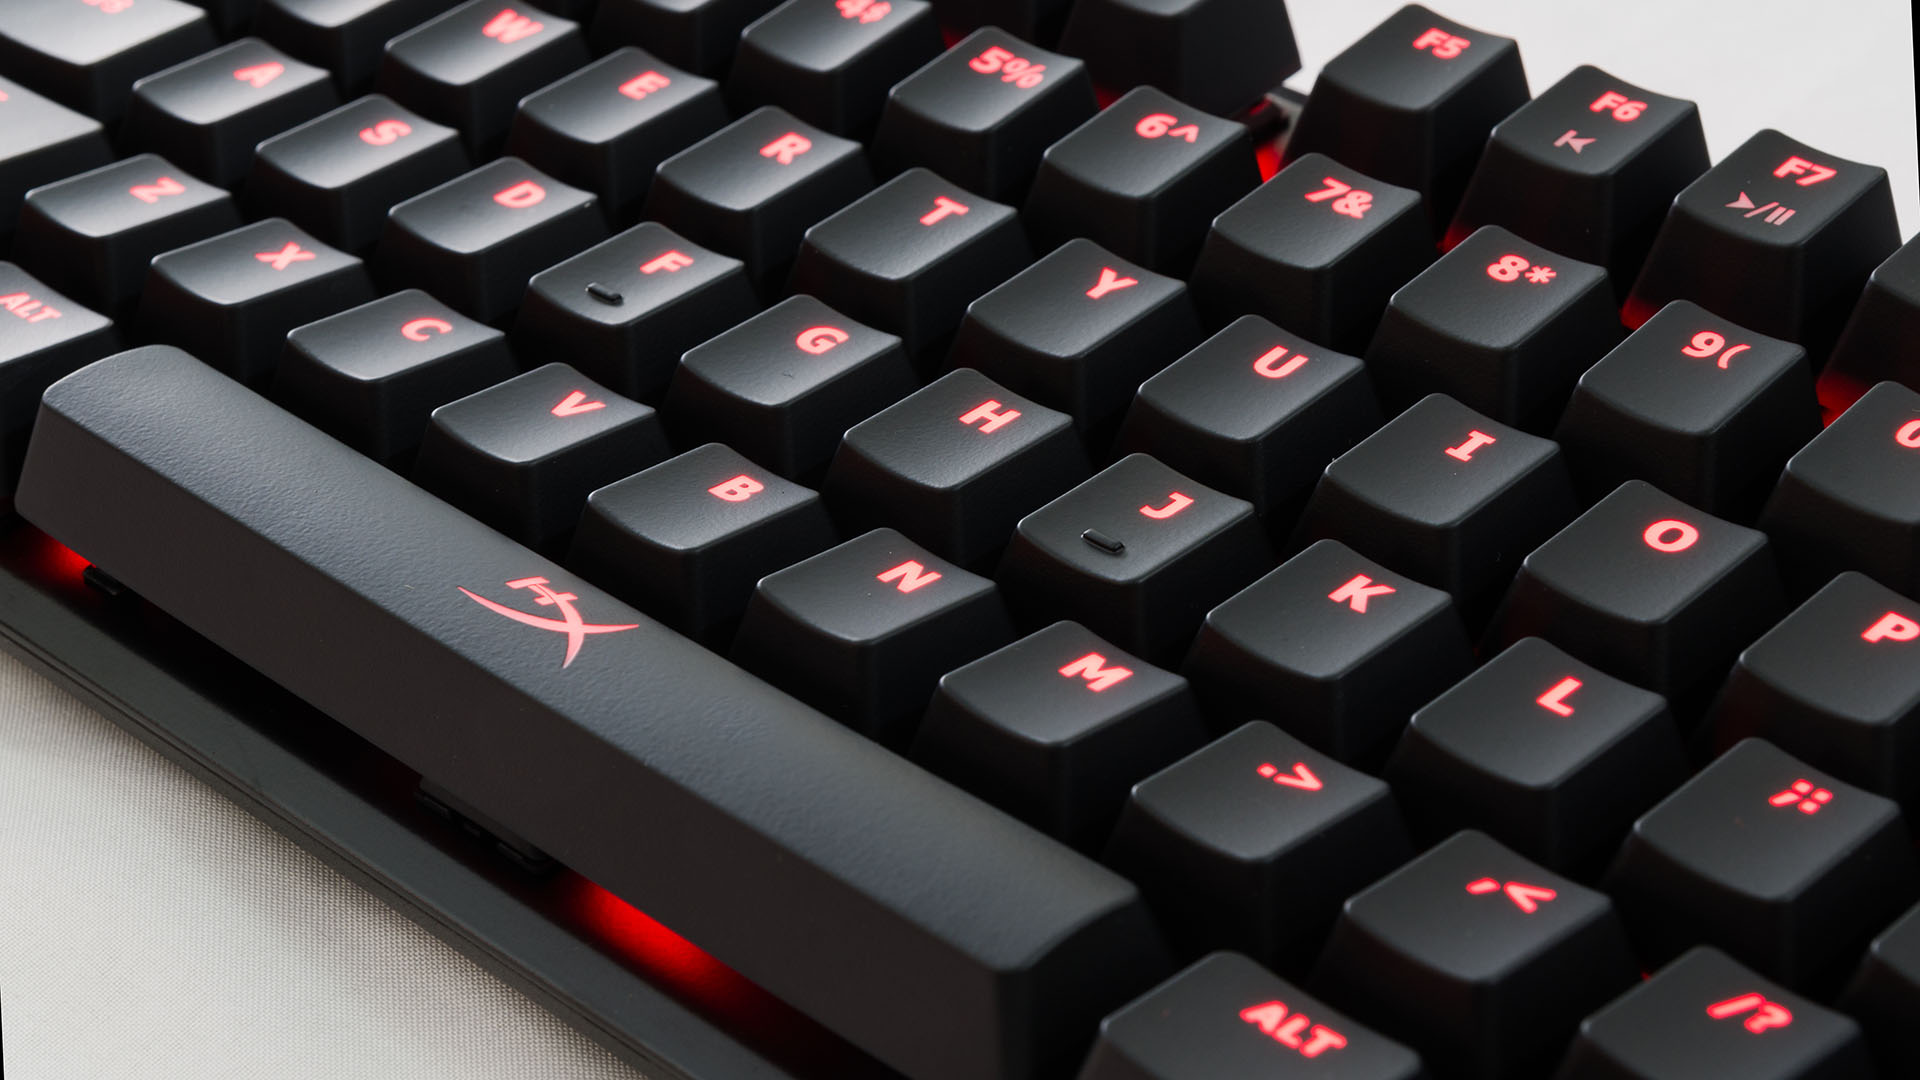 sfondo della tastiera,tastiera del computer,rosso,tecnologia,dispositivo di input,barra spaziatrice